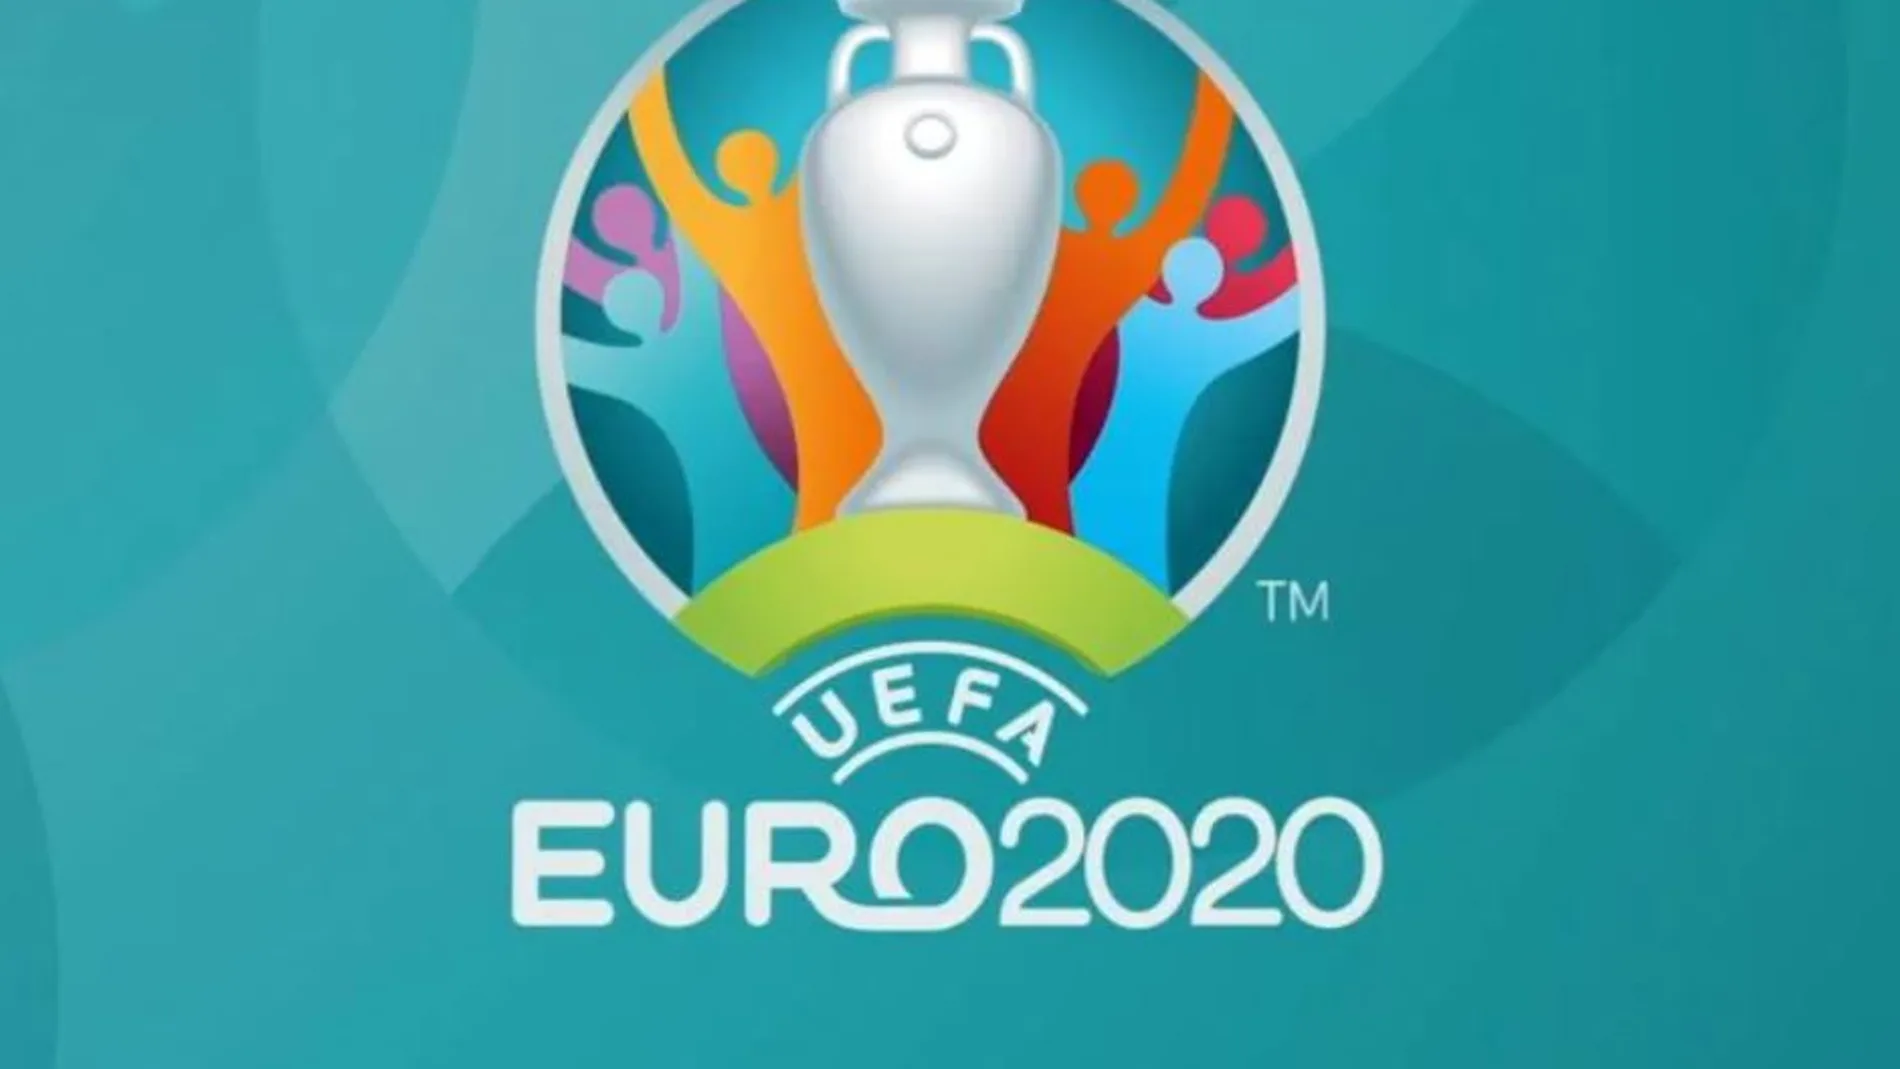 Eurocopa 2020